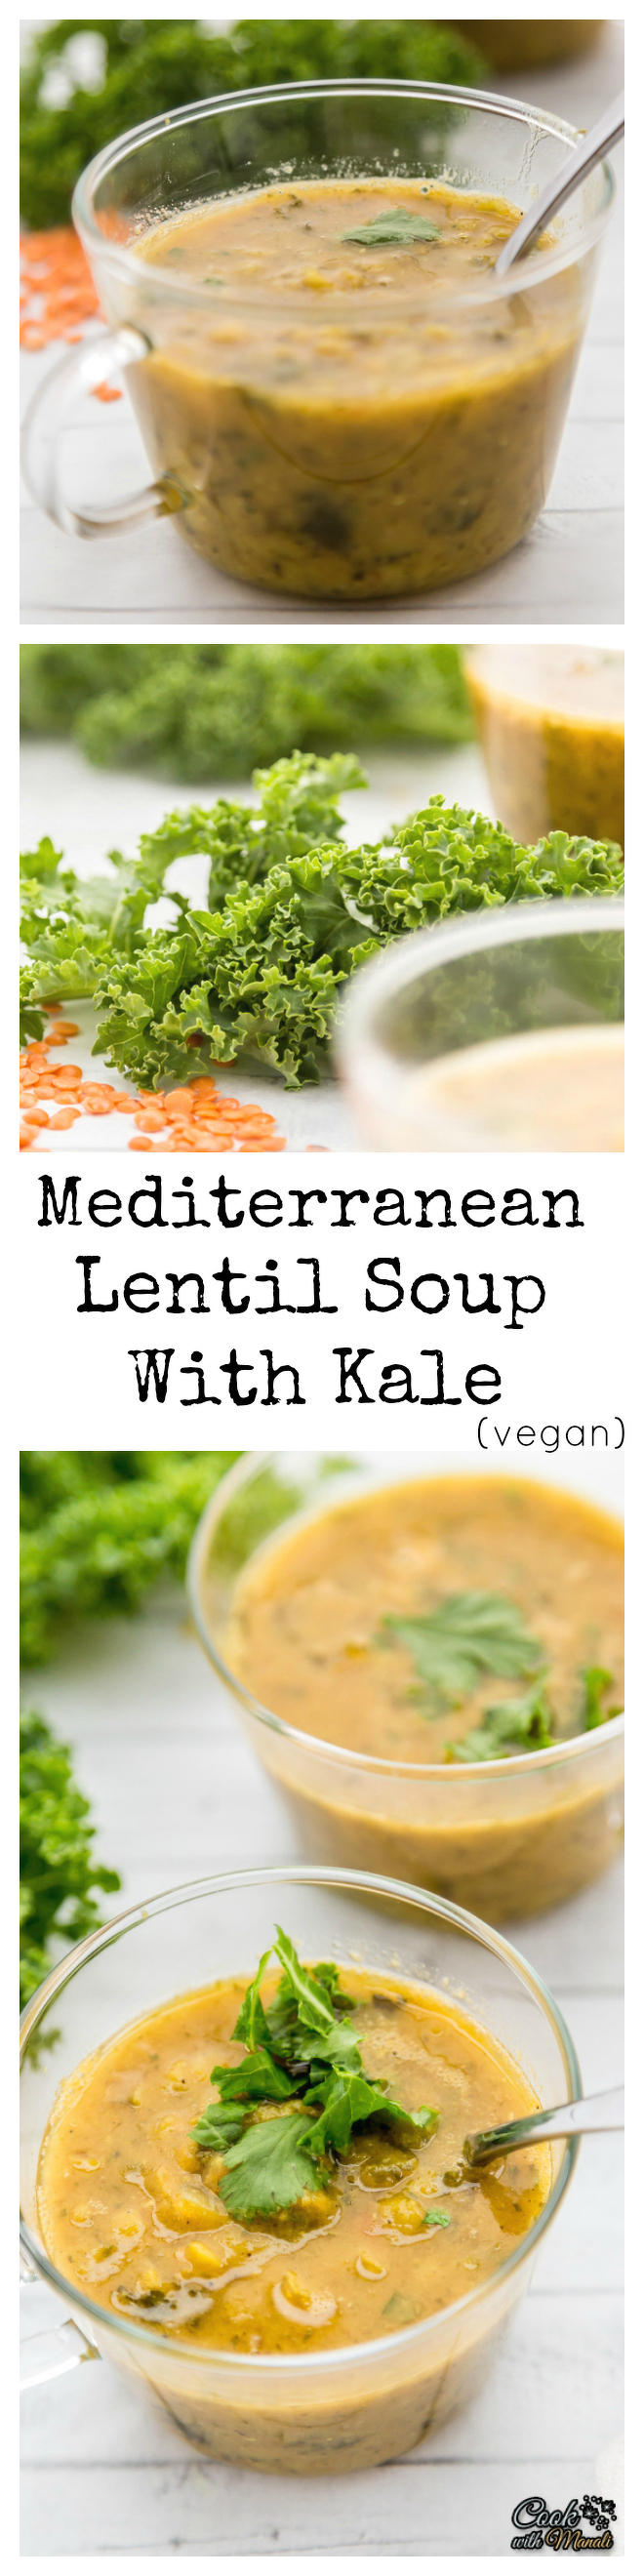 Mediterranean Lentil Soup with Kale Collage-nocwm